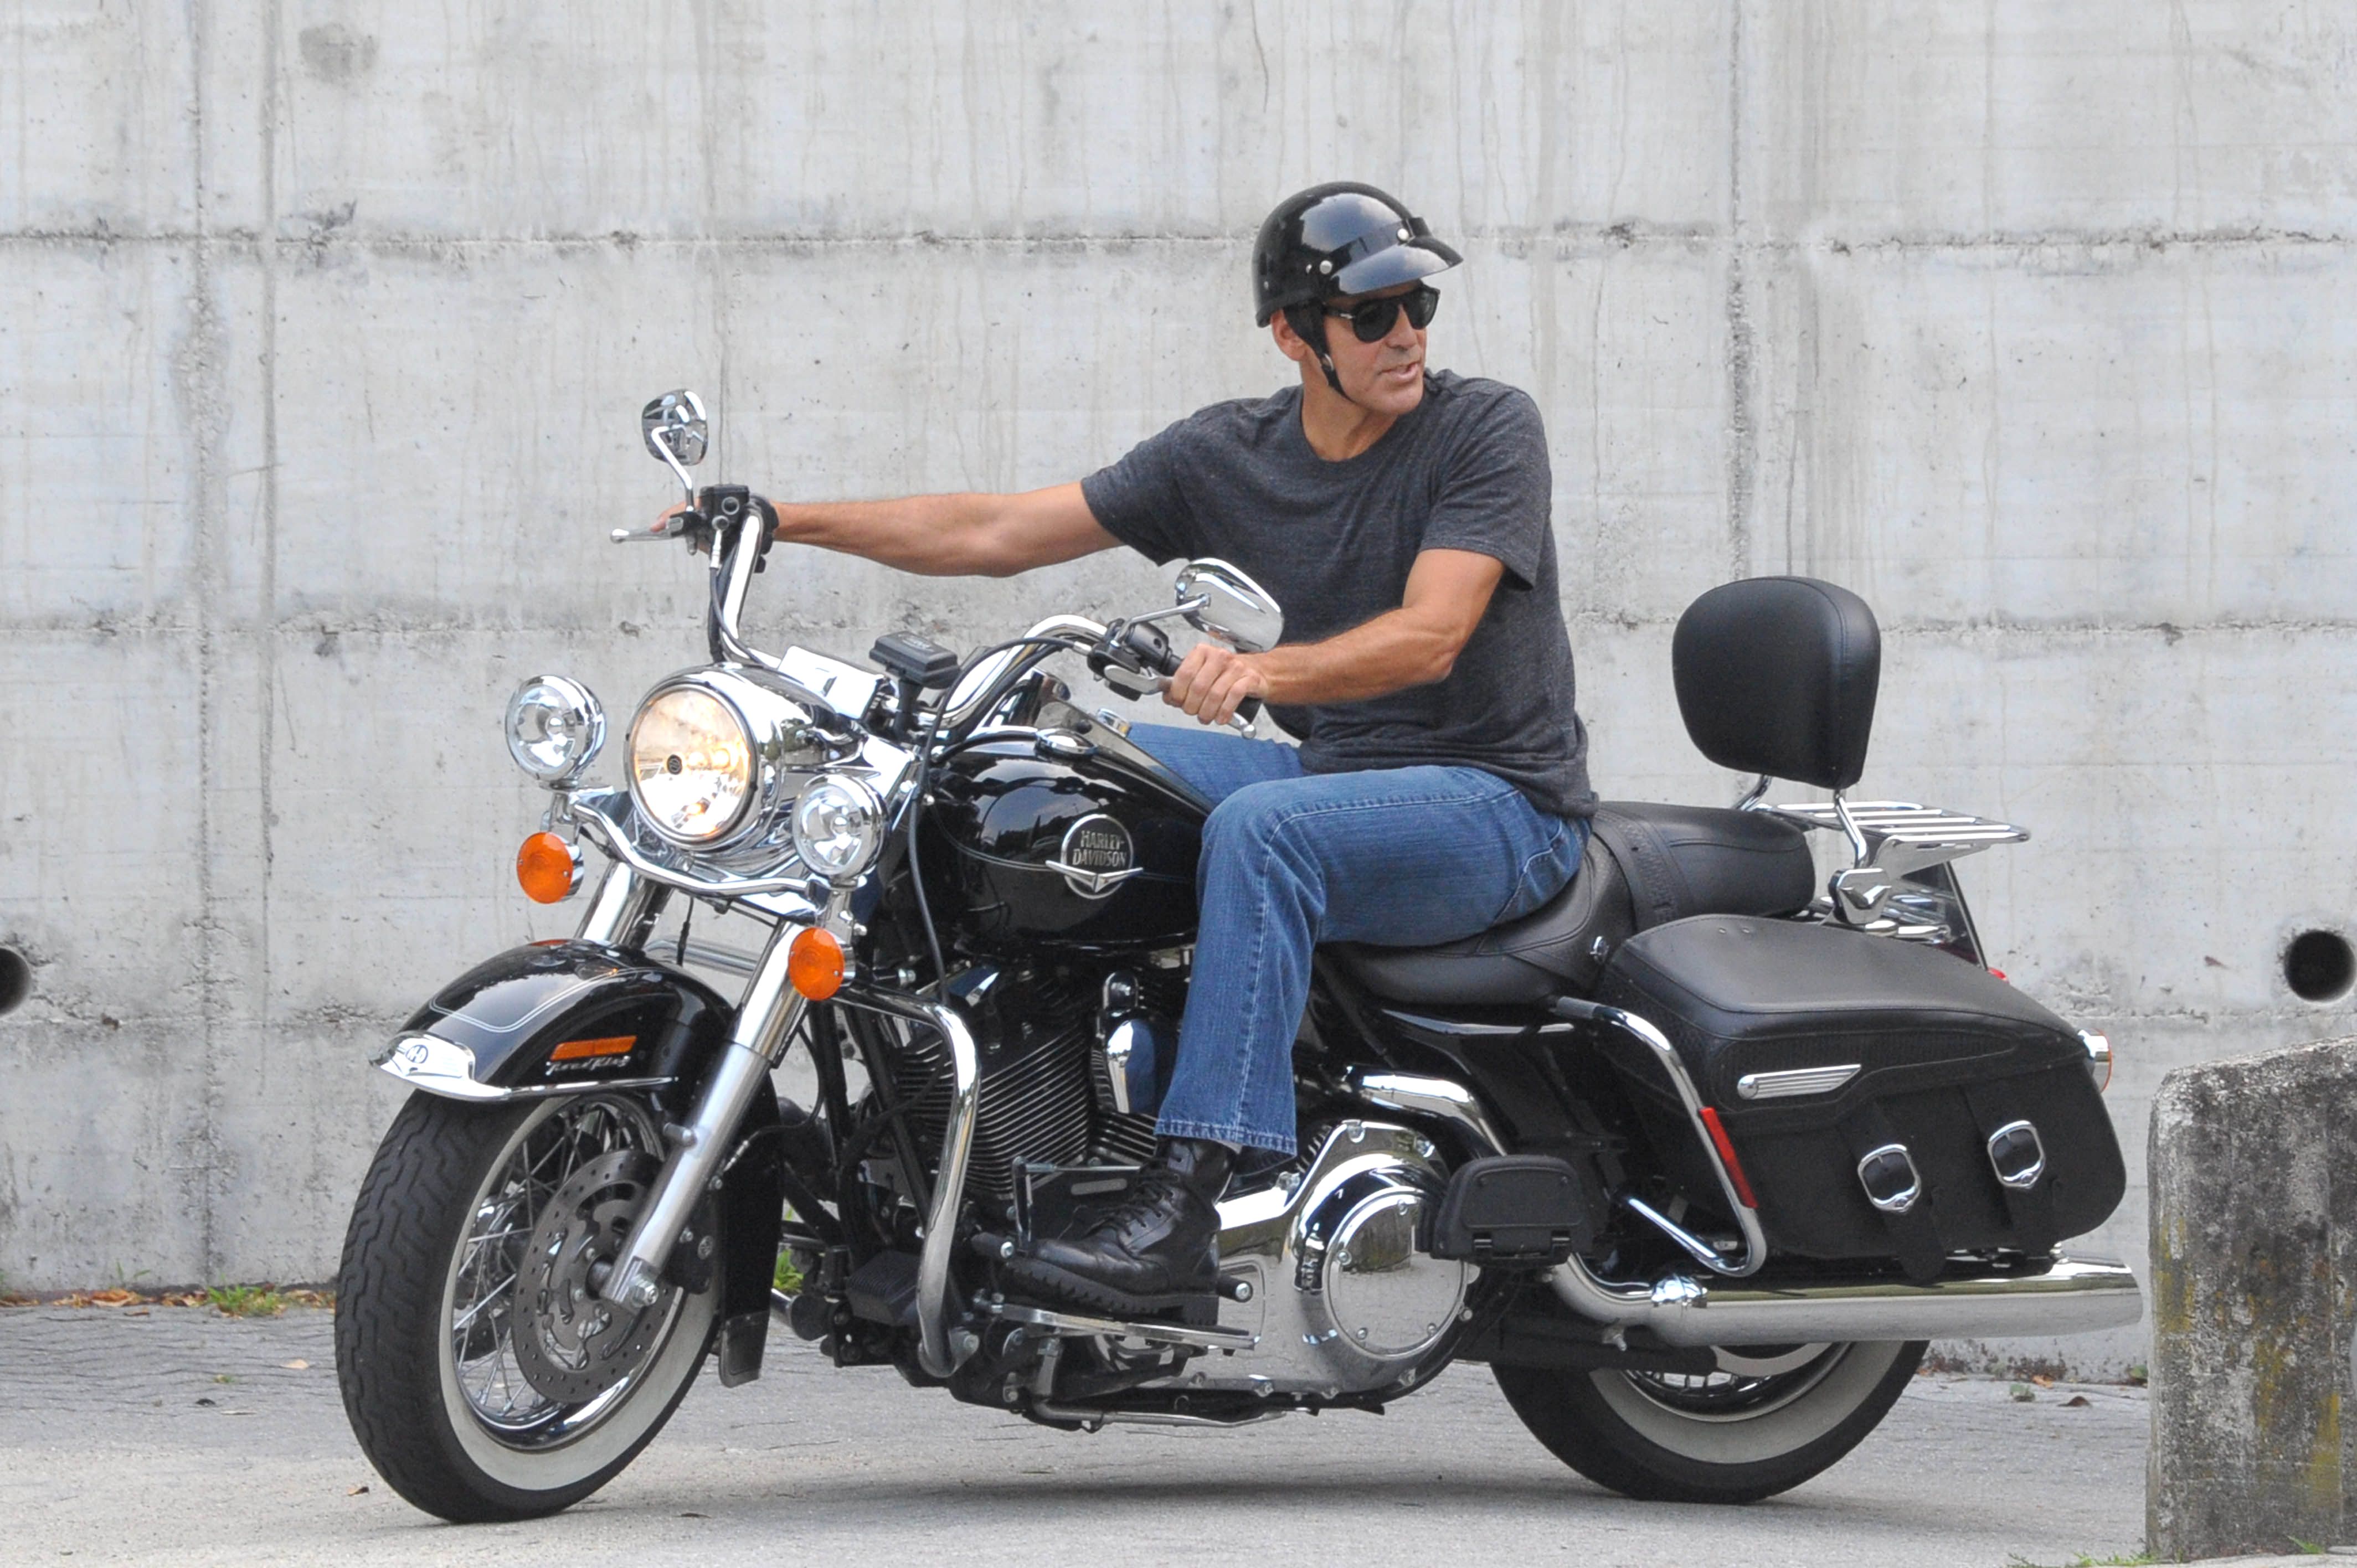 Какие звезды на мотоцикле. Джордж Клуни на мотоцикле. Знаменитости на мотоциклах. Голливудские звезды на мотоциклах. Мотоцикл знаменитостей рока.